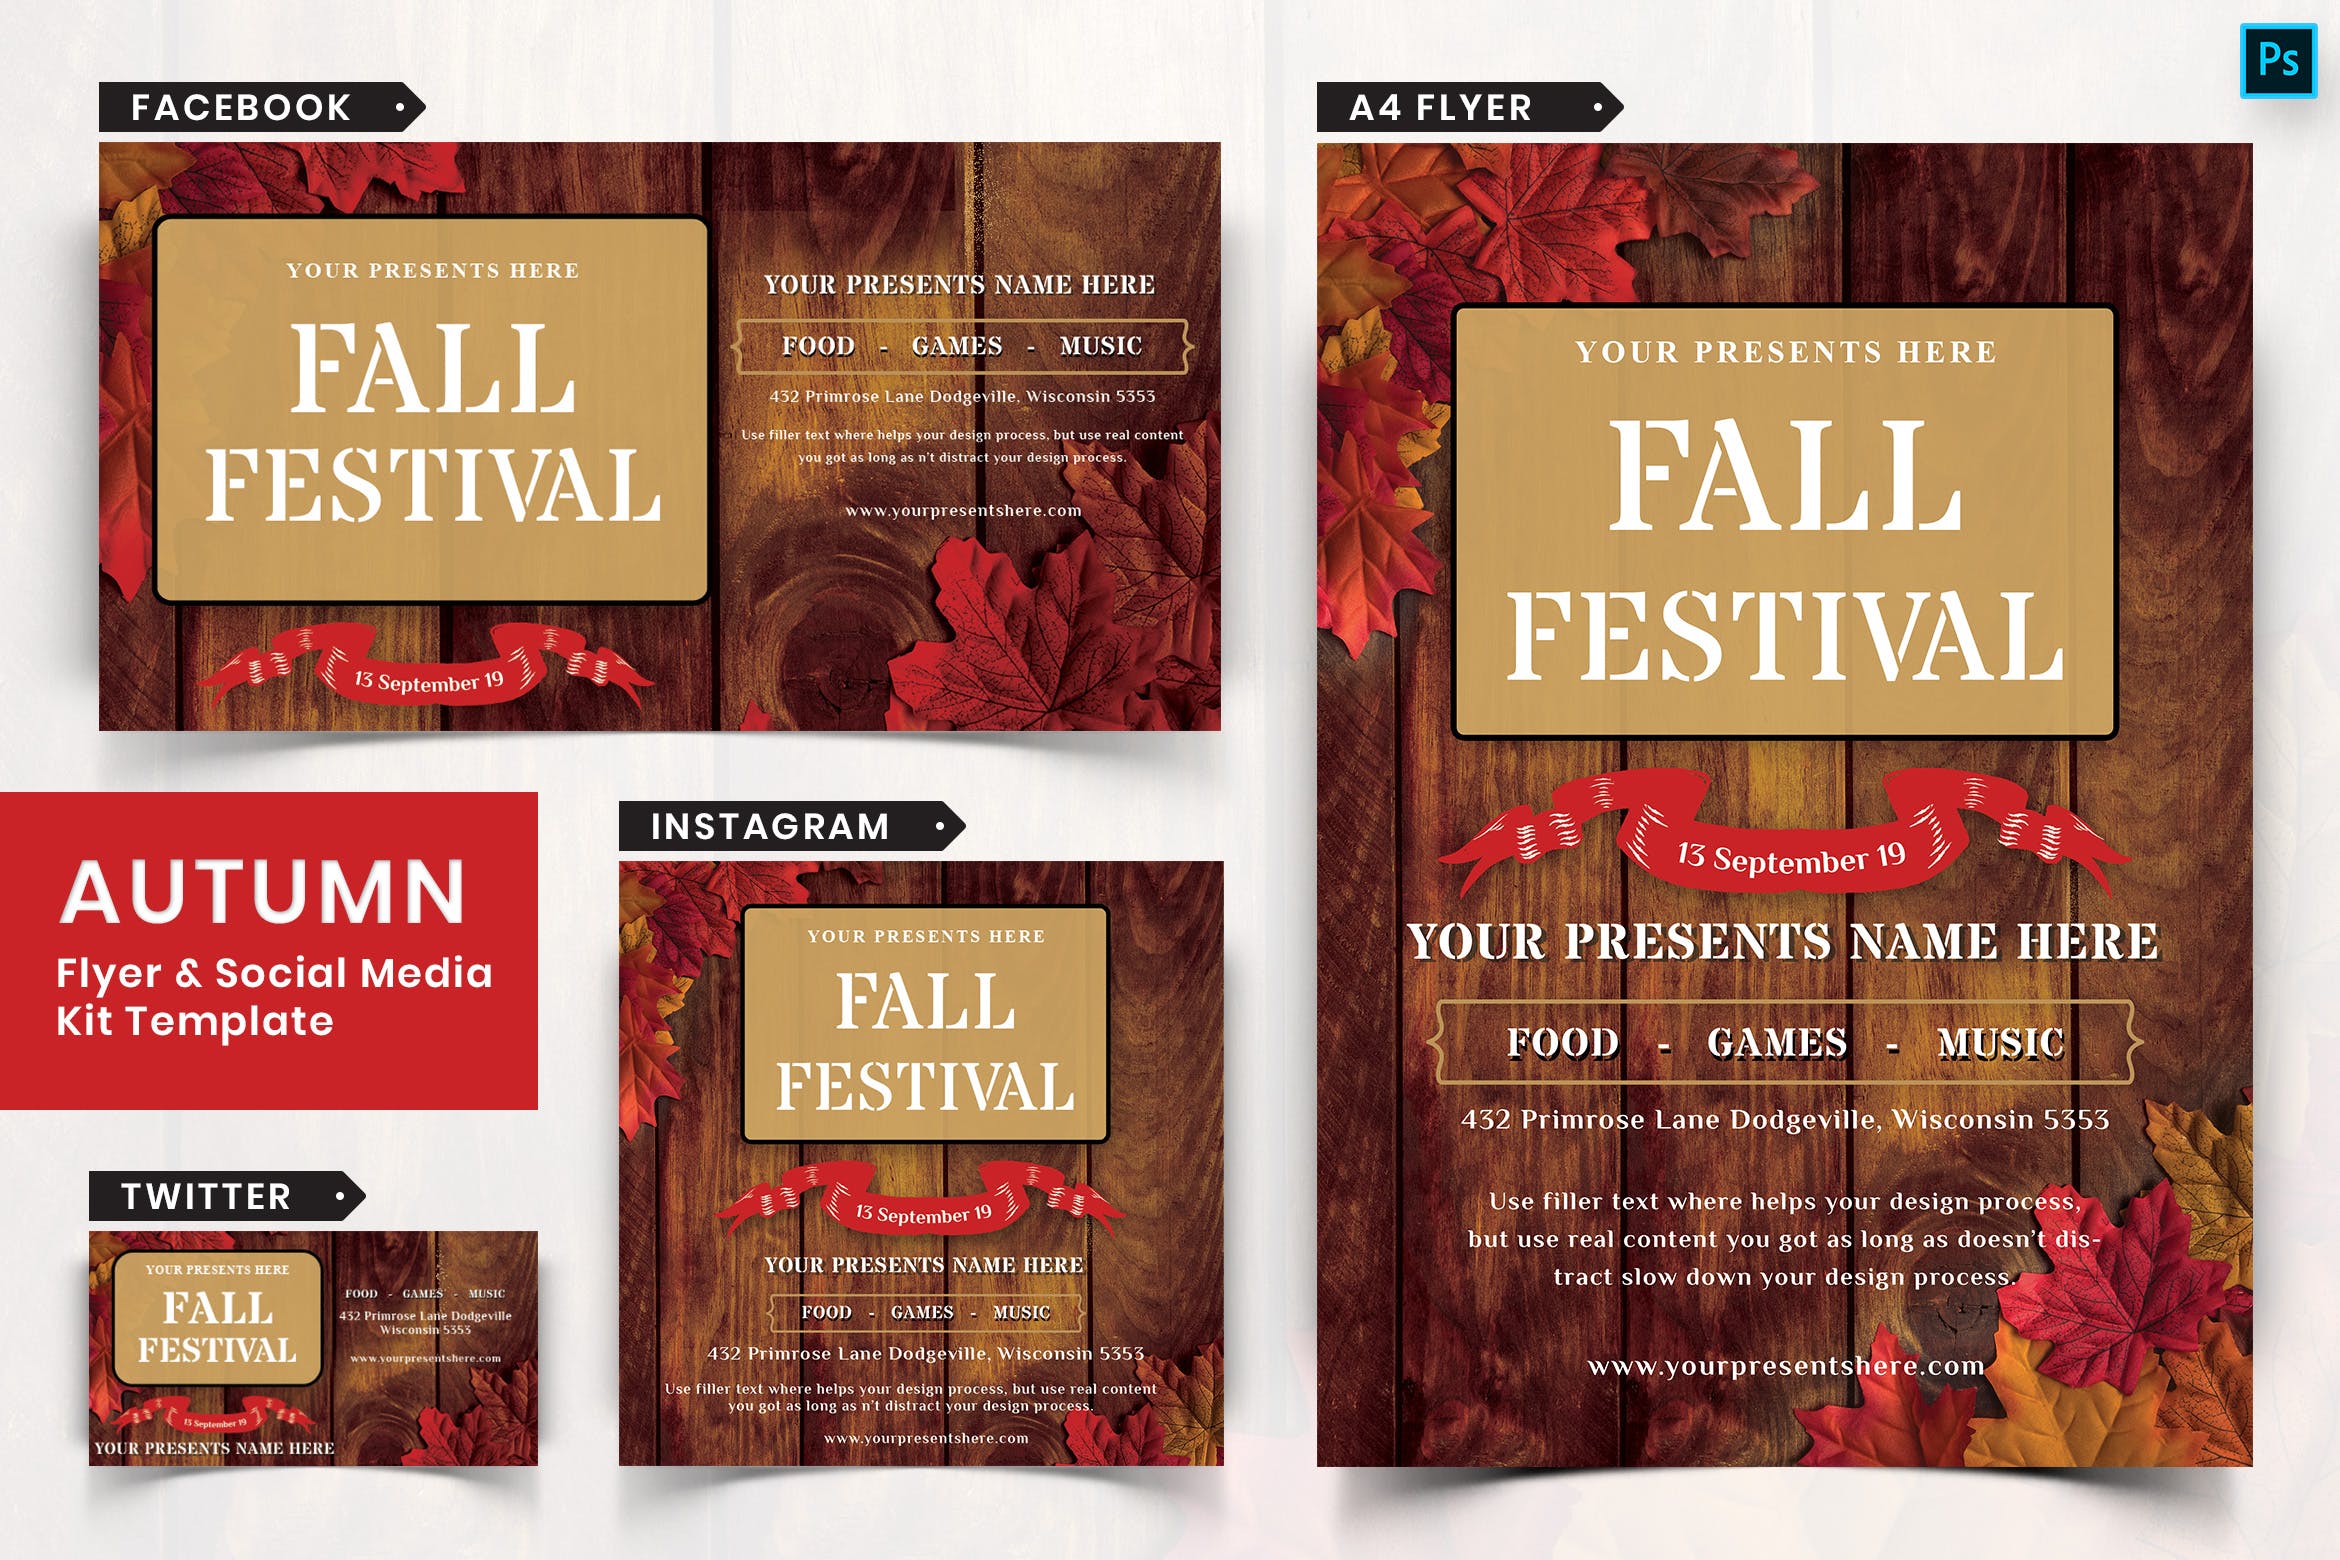 秋季节日传单和&社交媒体设计模板蚂蚁素材精选套装06 Autumn Festival Flyer & Social Media Pack-06插图